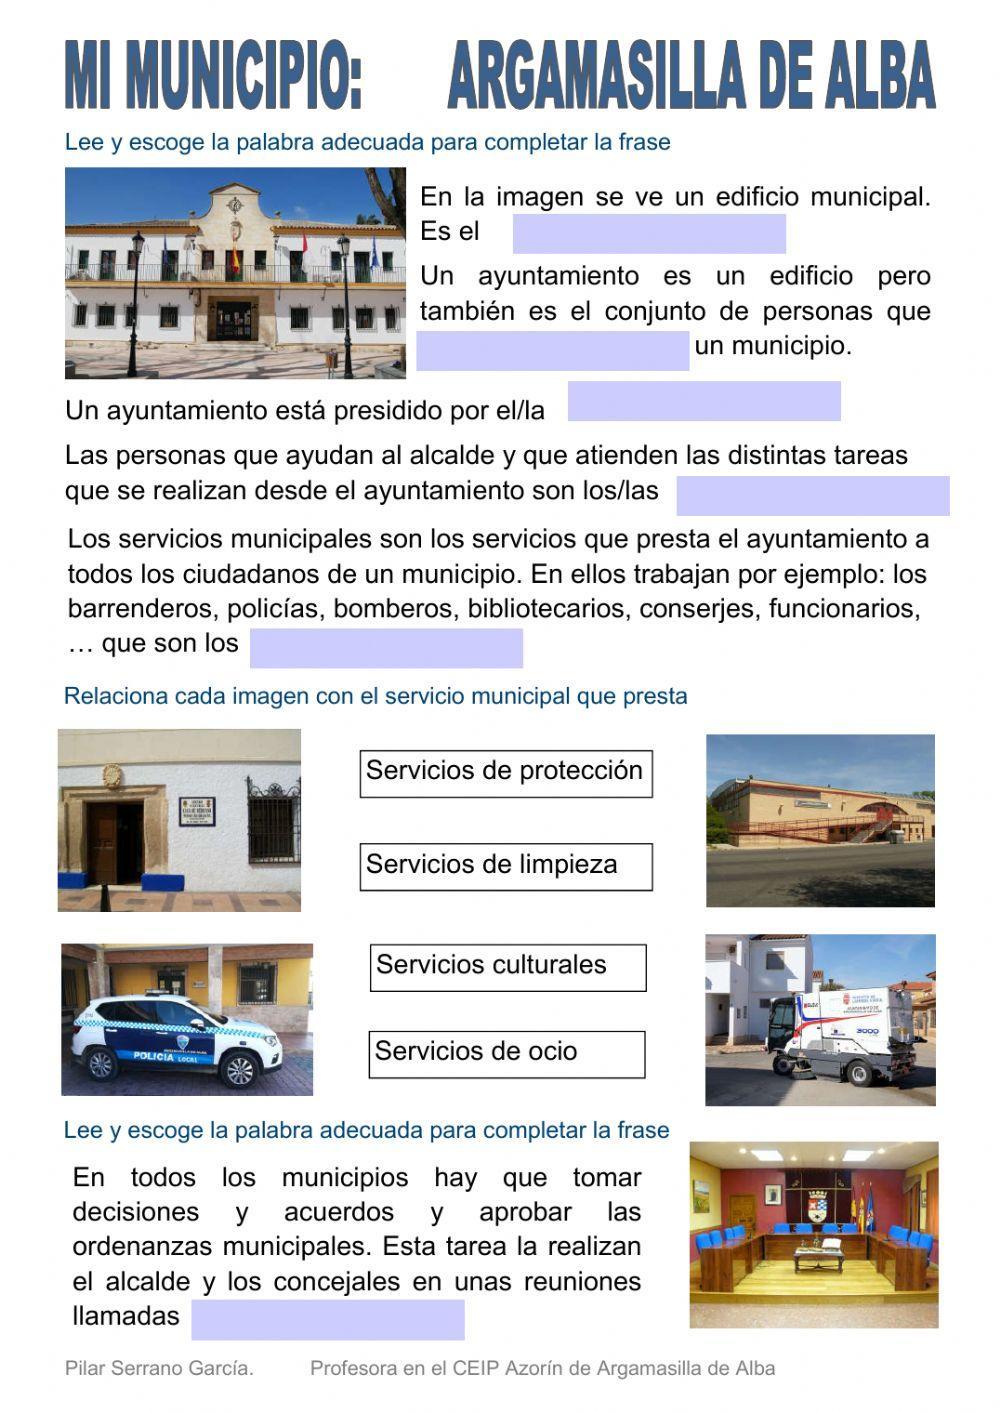 Mi municipio: Argamasilla de Alba